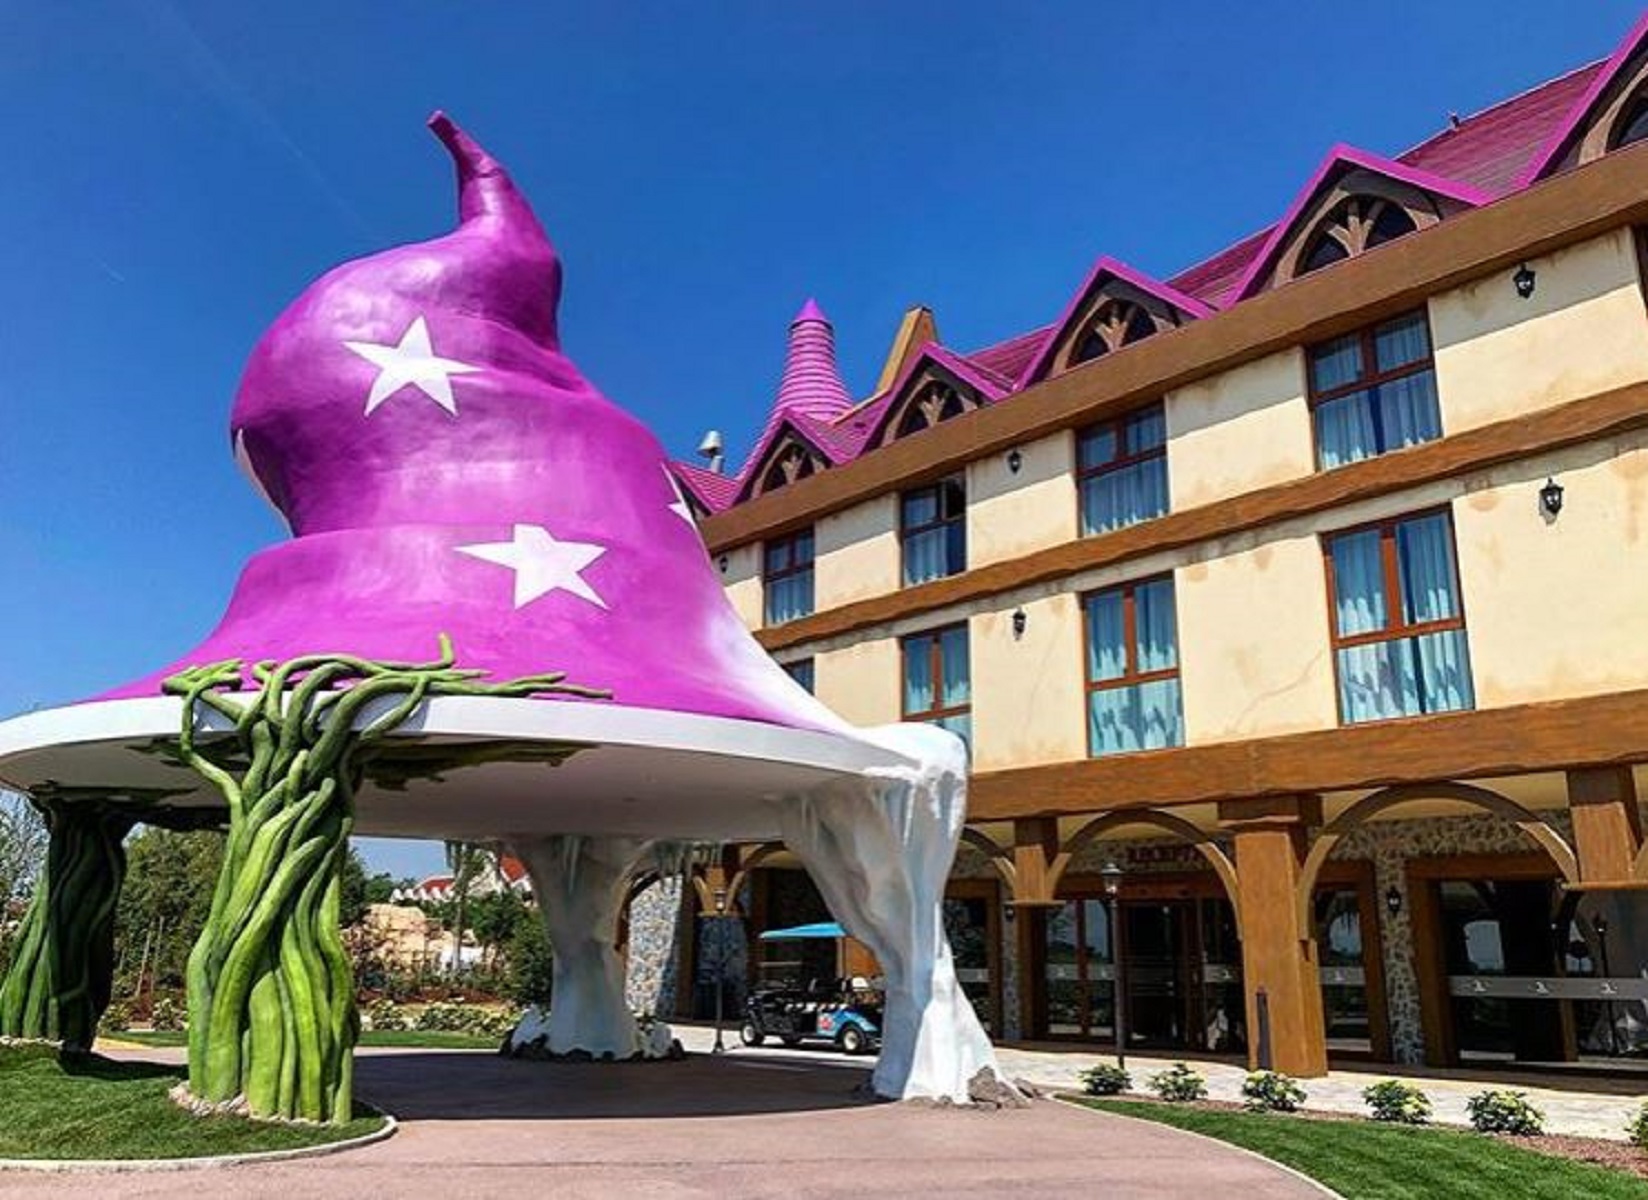 Gardaland Magic Hotel, inaugurato l'albergo per adulti e bambini